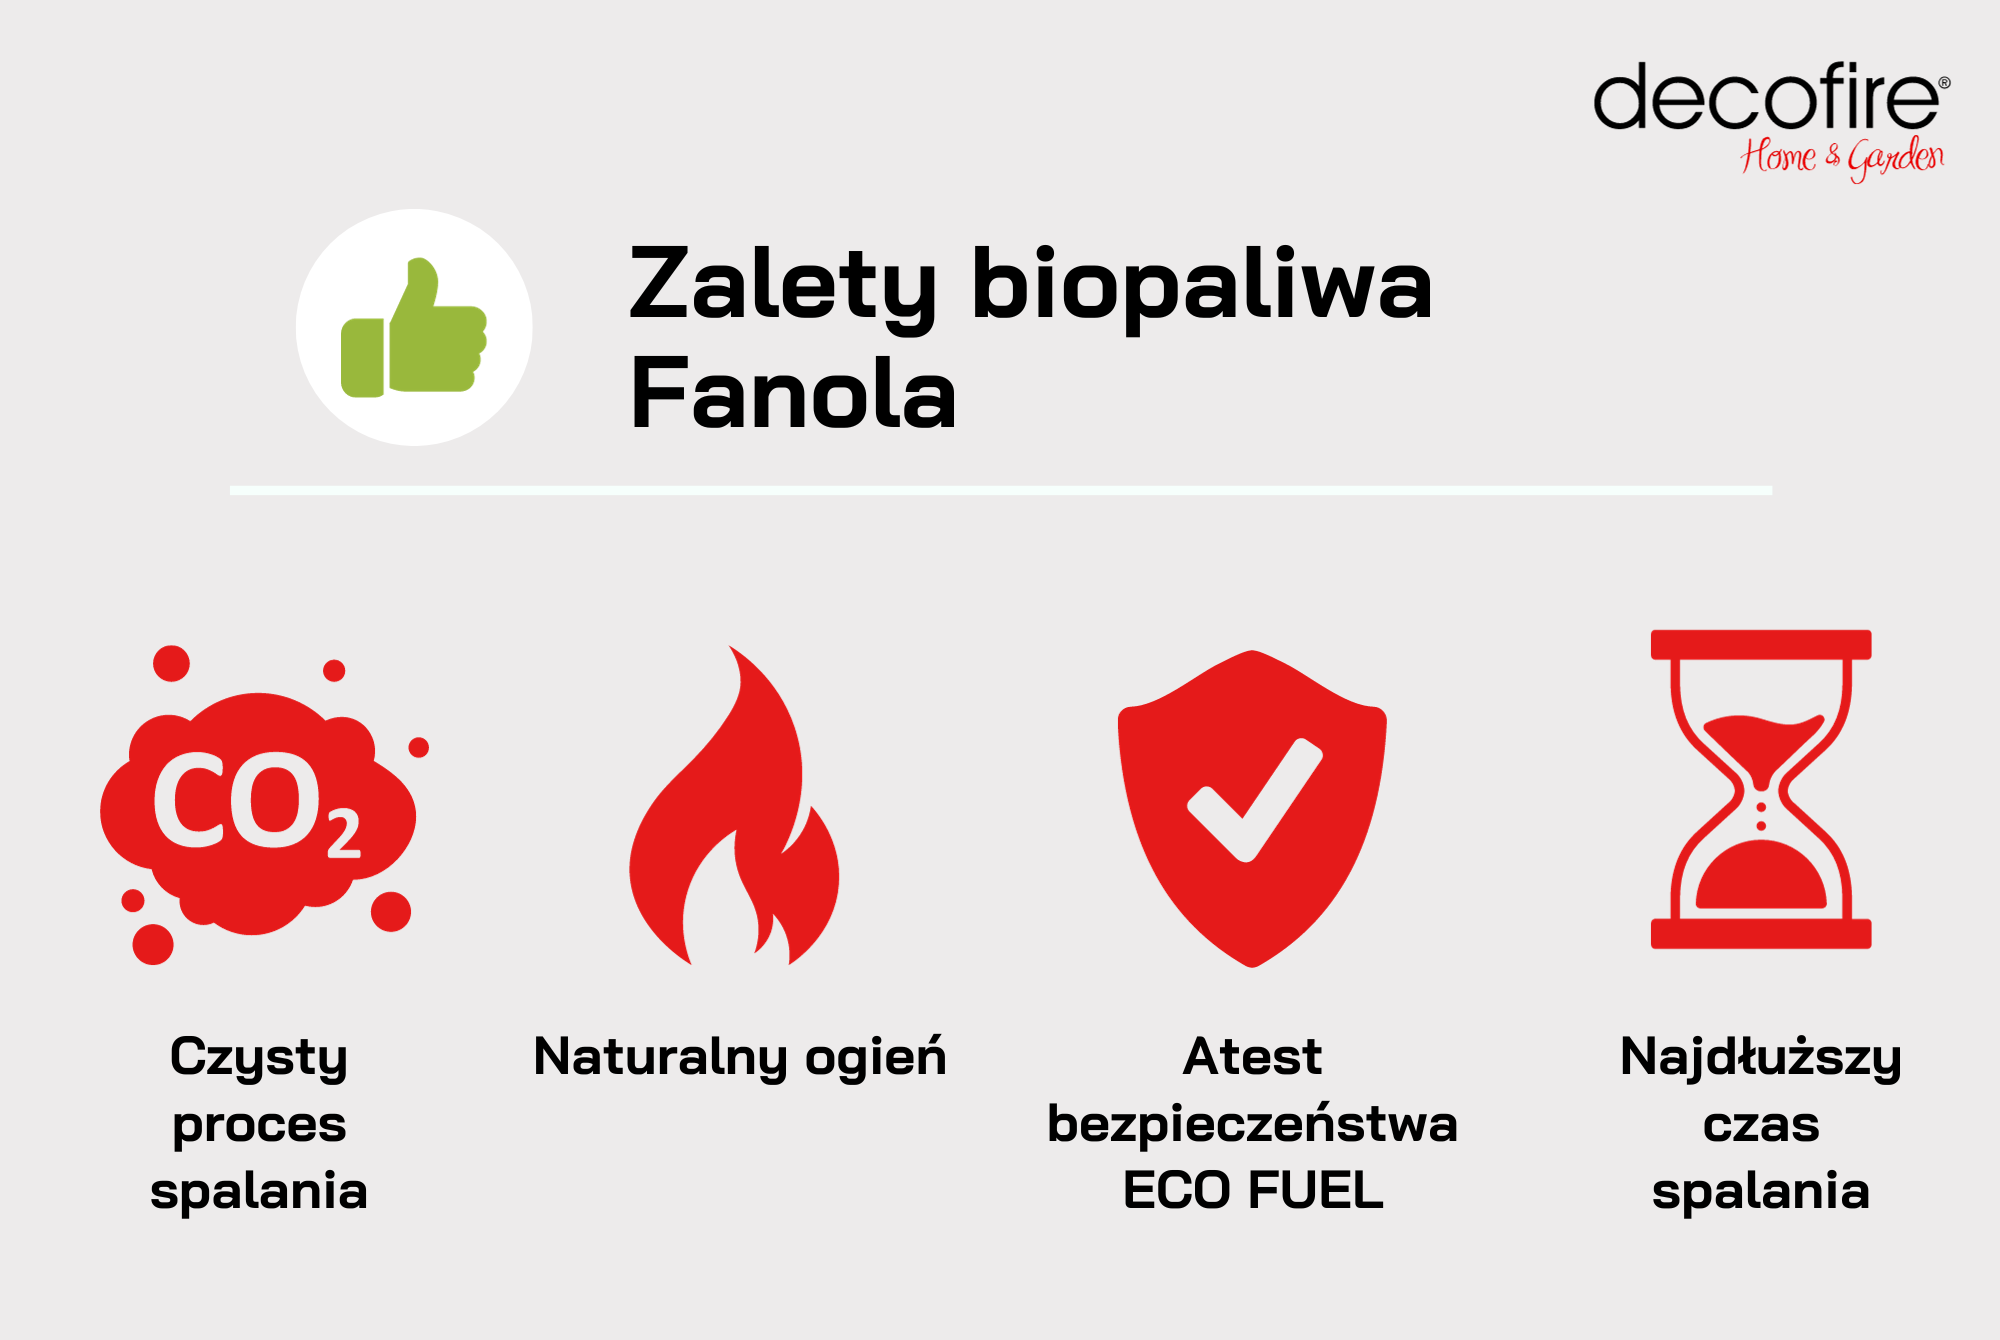 Zalety biopaliwa Fanola